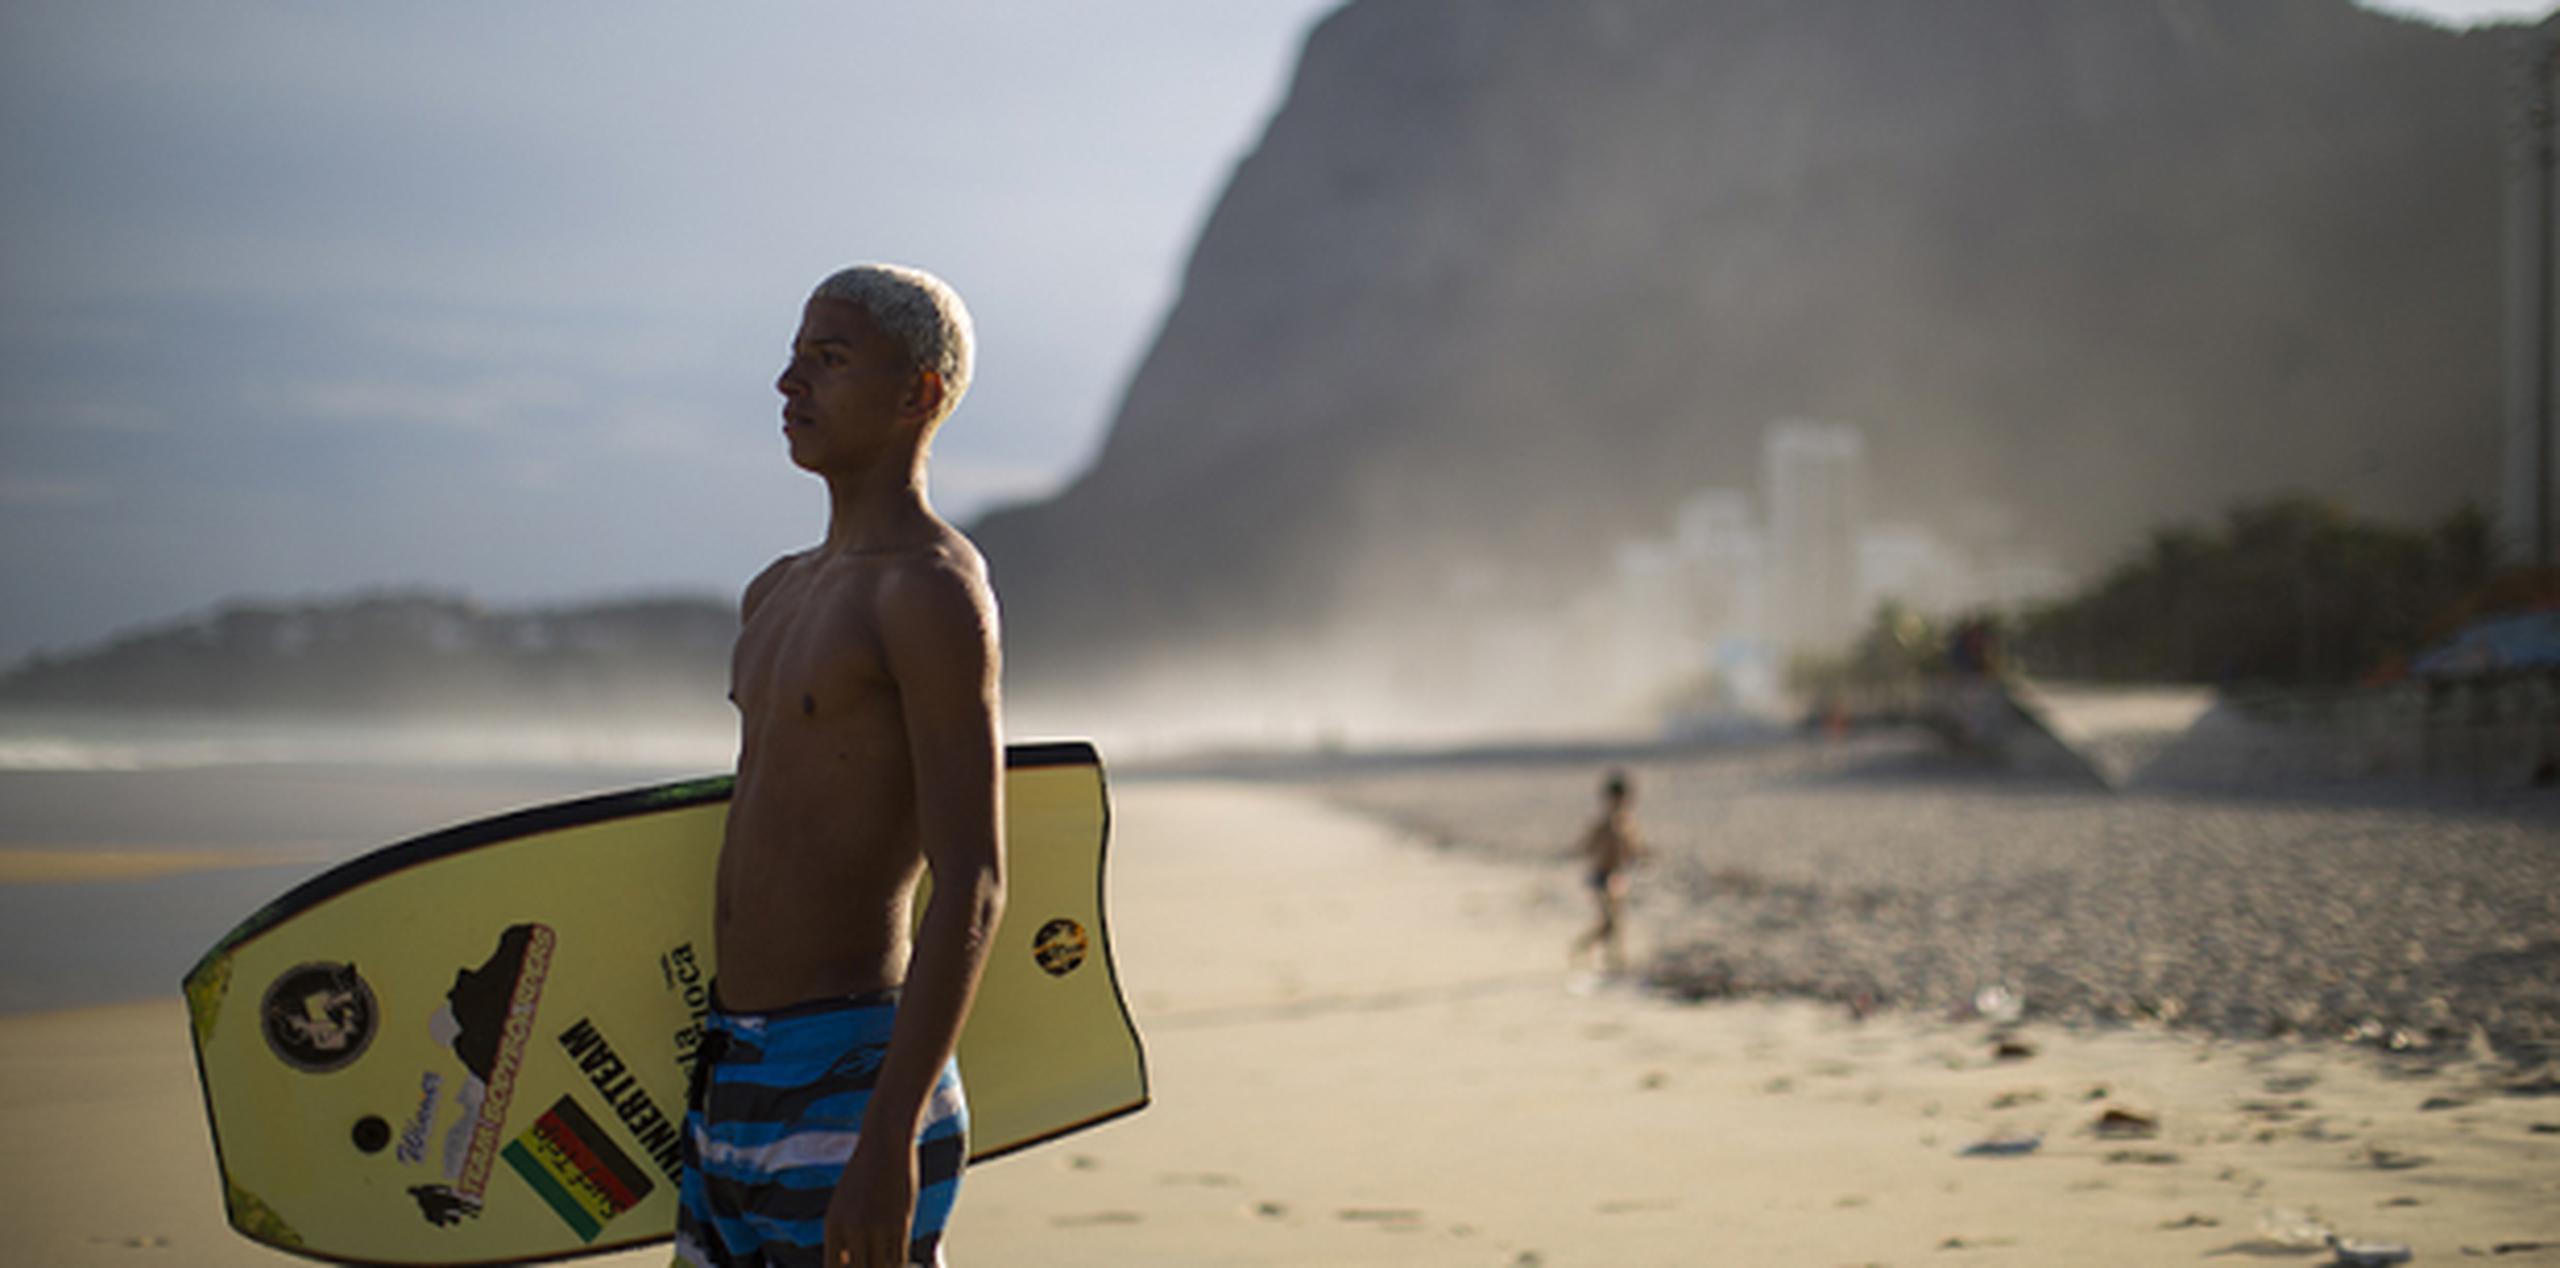 Con todo, labrase una carrera entre las olas sigue siendo un objetivo difícil para muchos surfistas de los barrios humildes. (AP)